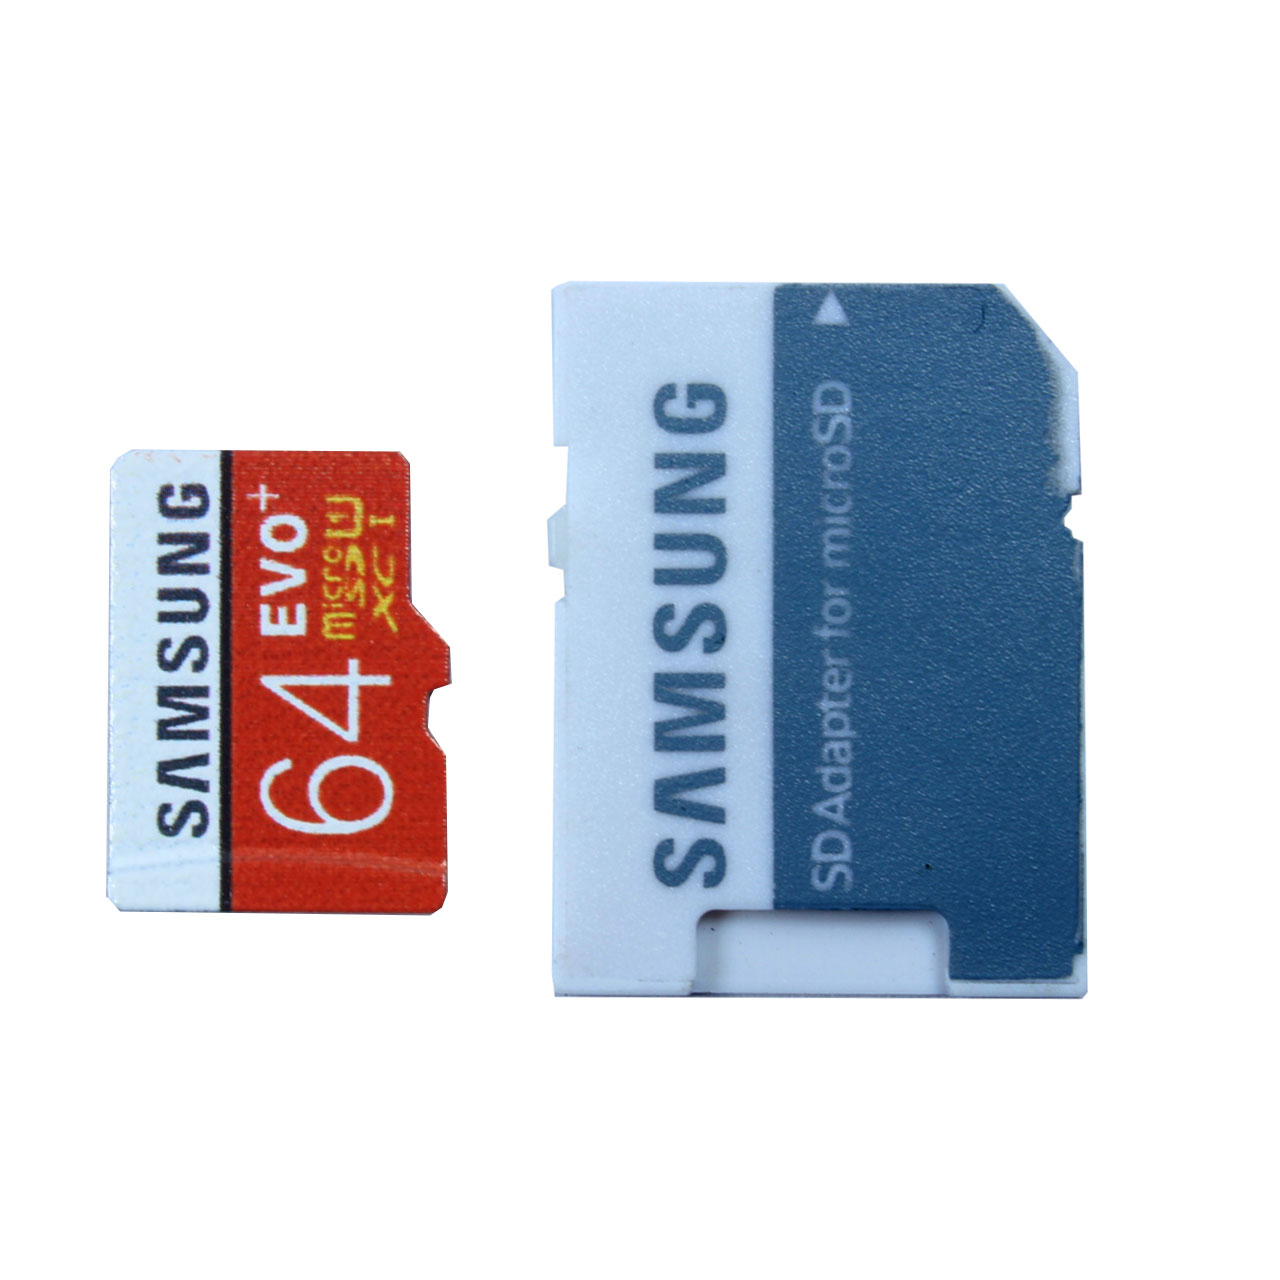 نقد و بررسی کارت حافظه microSDXC مدل Evo Plus کلاس 10 استاندارد UHS-I U1 سرعت 100MBps ظرفیت 64 گیگابایت به همراه آداپتور SD توسط خریداران